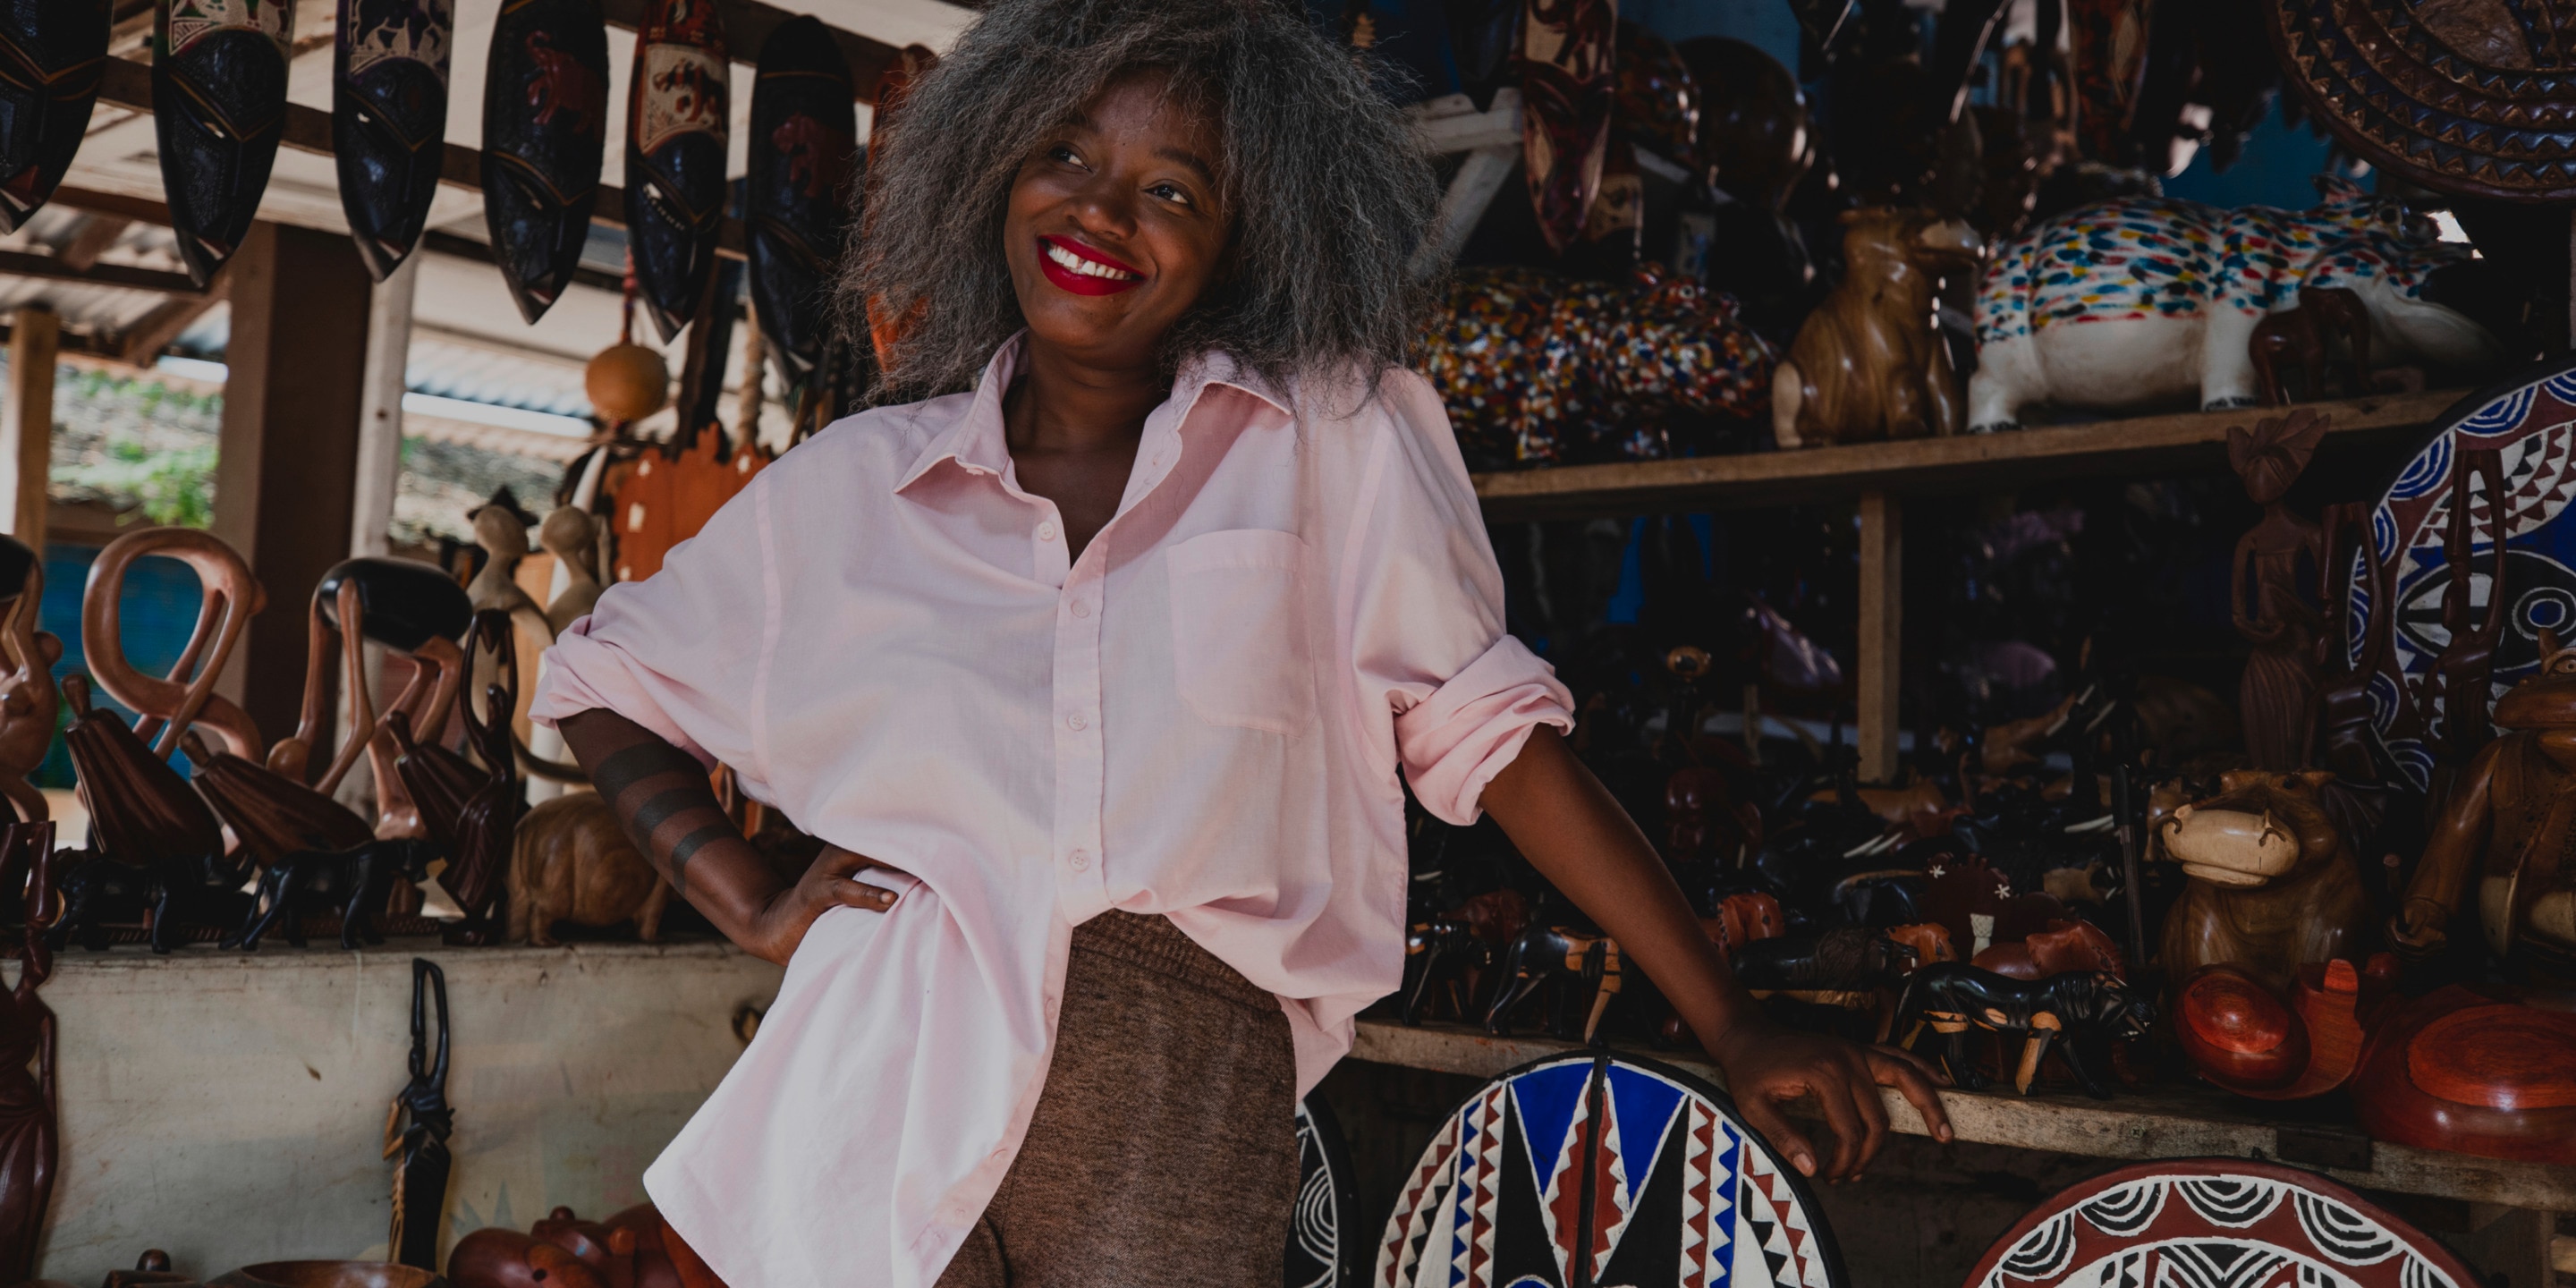 La diseñadora de moda Rebecca Zoro sonriendo - en una tienda de souvenirs africana dentro de una comunidad agrícola de cacao de Costa de Marfil